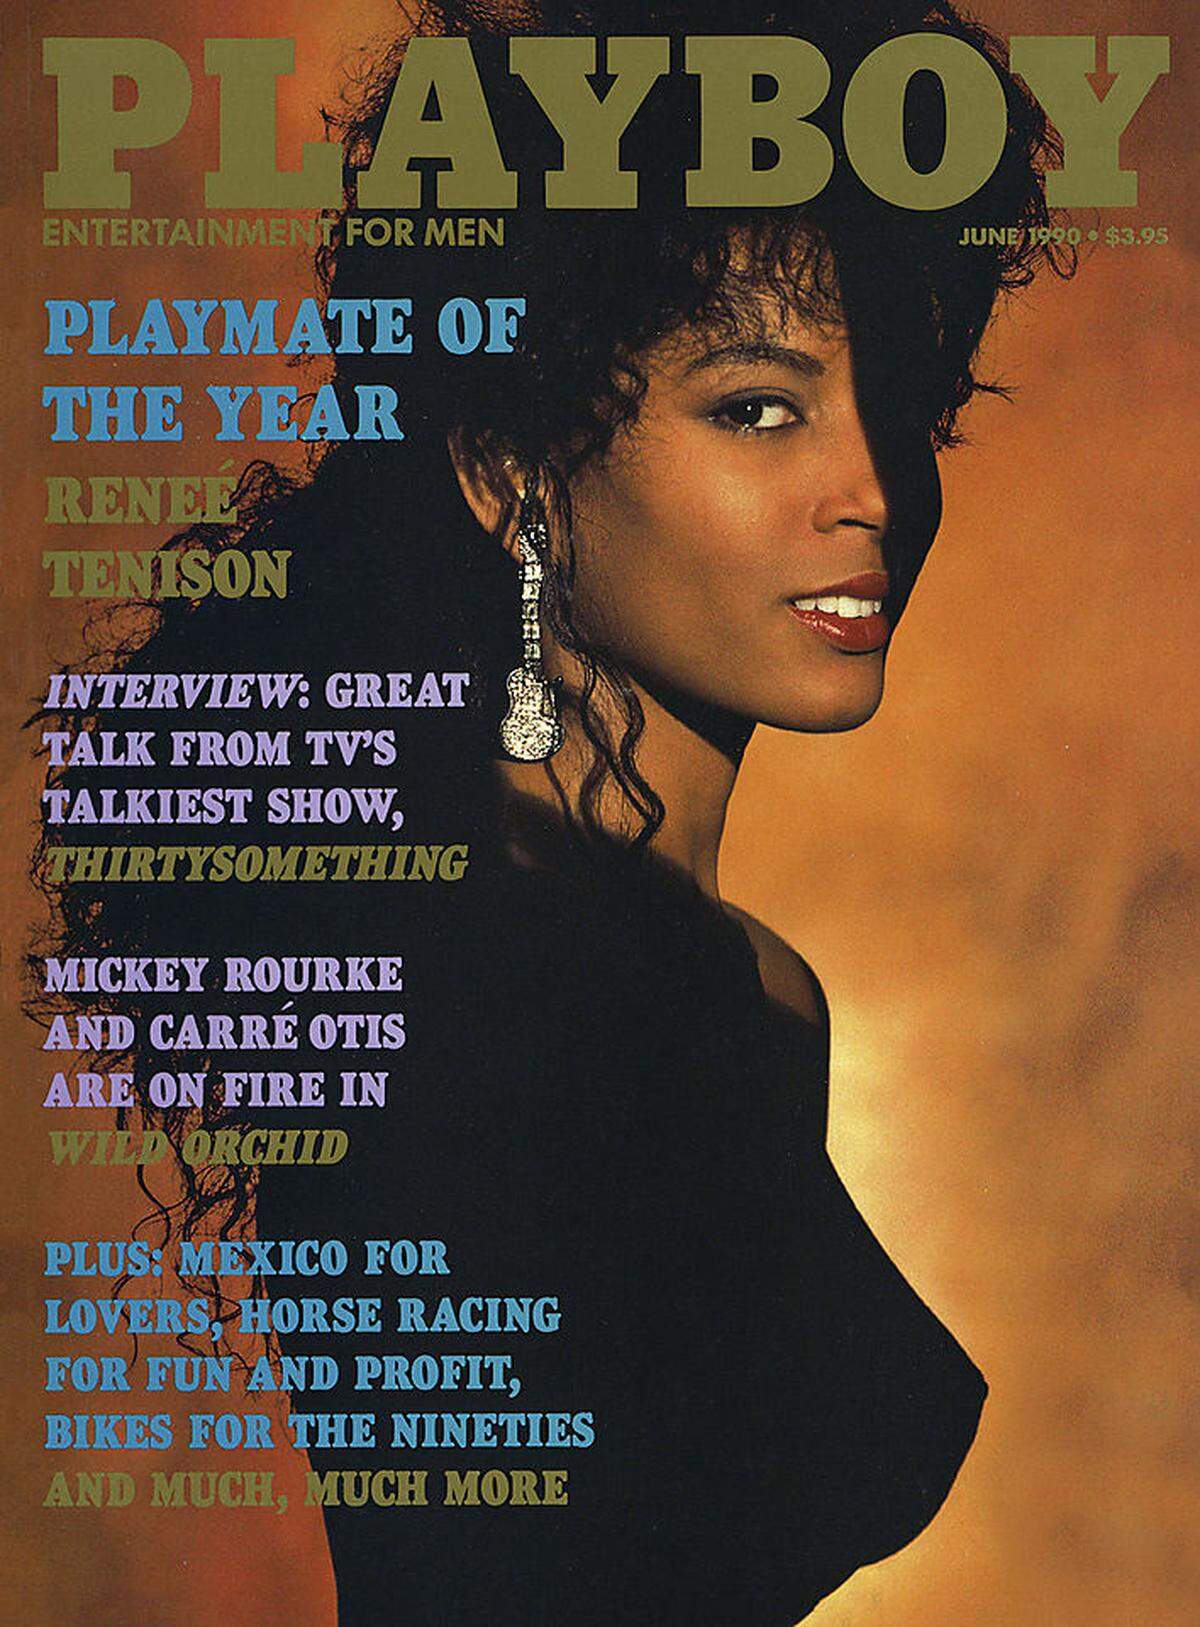 Ein wahrhaft ikonischer Auftritt auf dem "Playboy"-Cover war jener von Renee Tenison: Sie war die erste Afroamerikanerin, die zum "Playmate des Jahres" gekürt wurde - und zwar im Jahr 1990. Im Bild: Tenison auf dem Juni-Cover des "Playboy" 1990